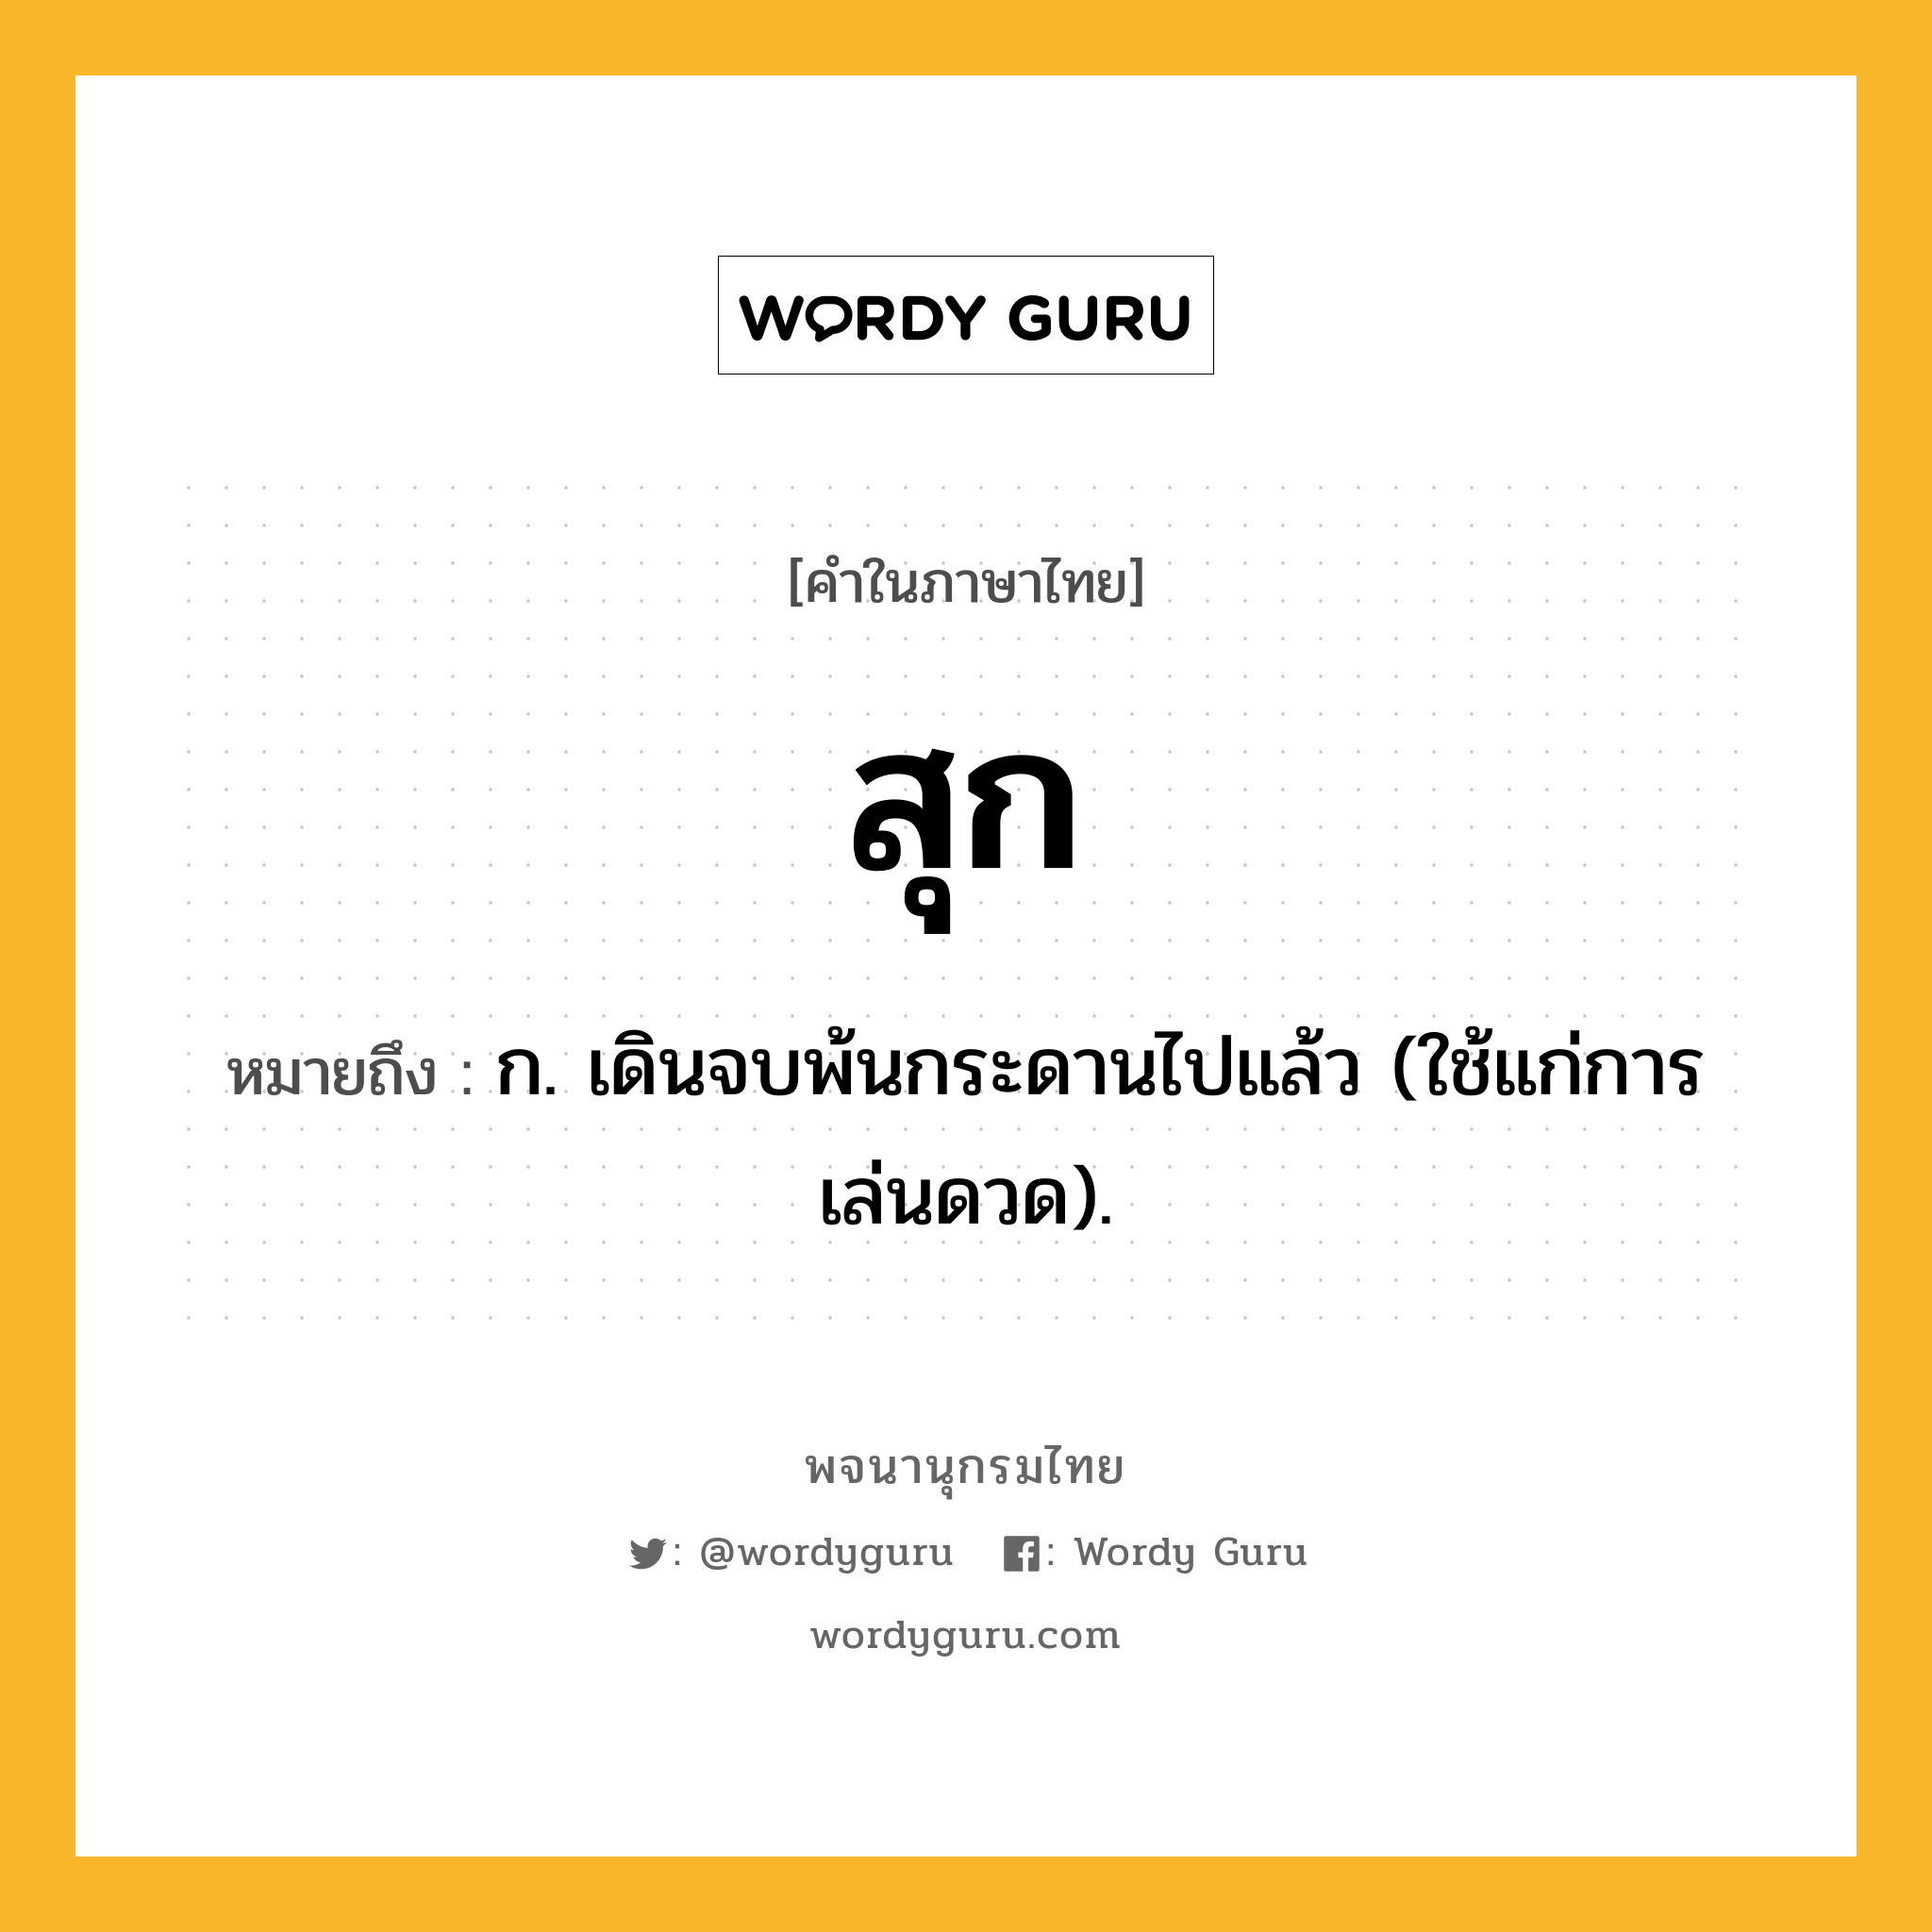 สุก หมายถึงอะไร?, คำในภาษาไทย สุก หมายถึง ก. เดินจบพ้นกระดานไปแล้ว (ใช้แก่การเล่นดวด).